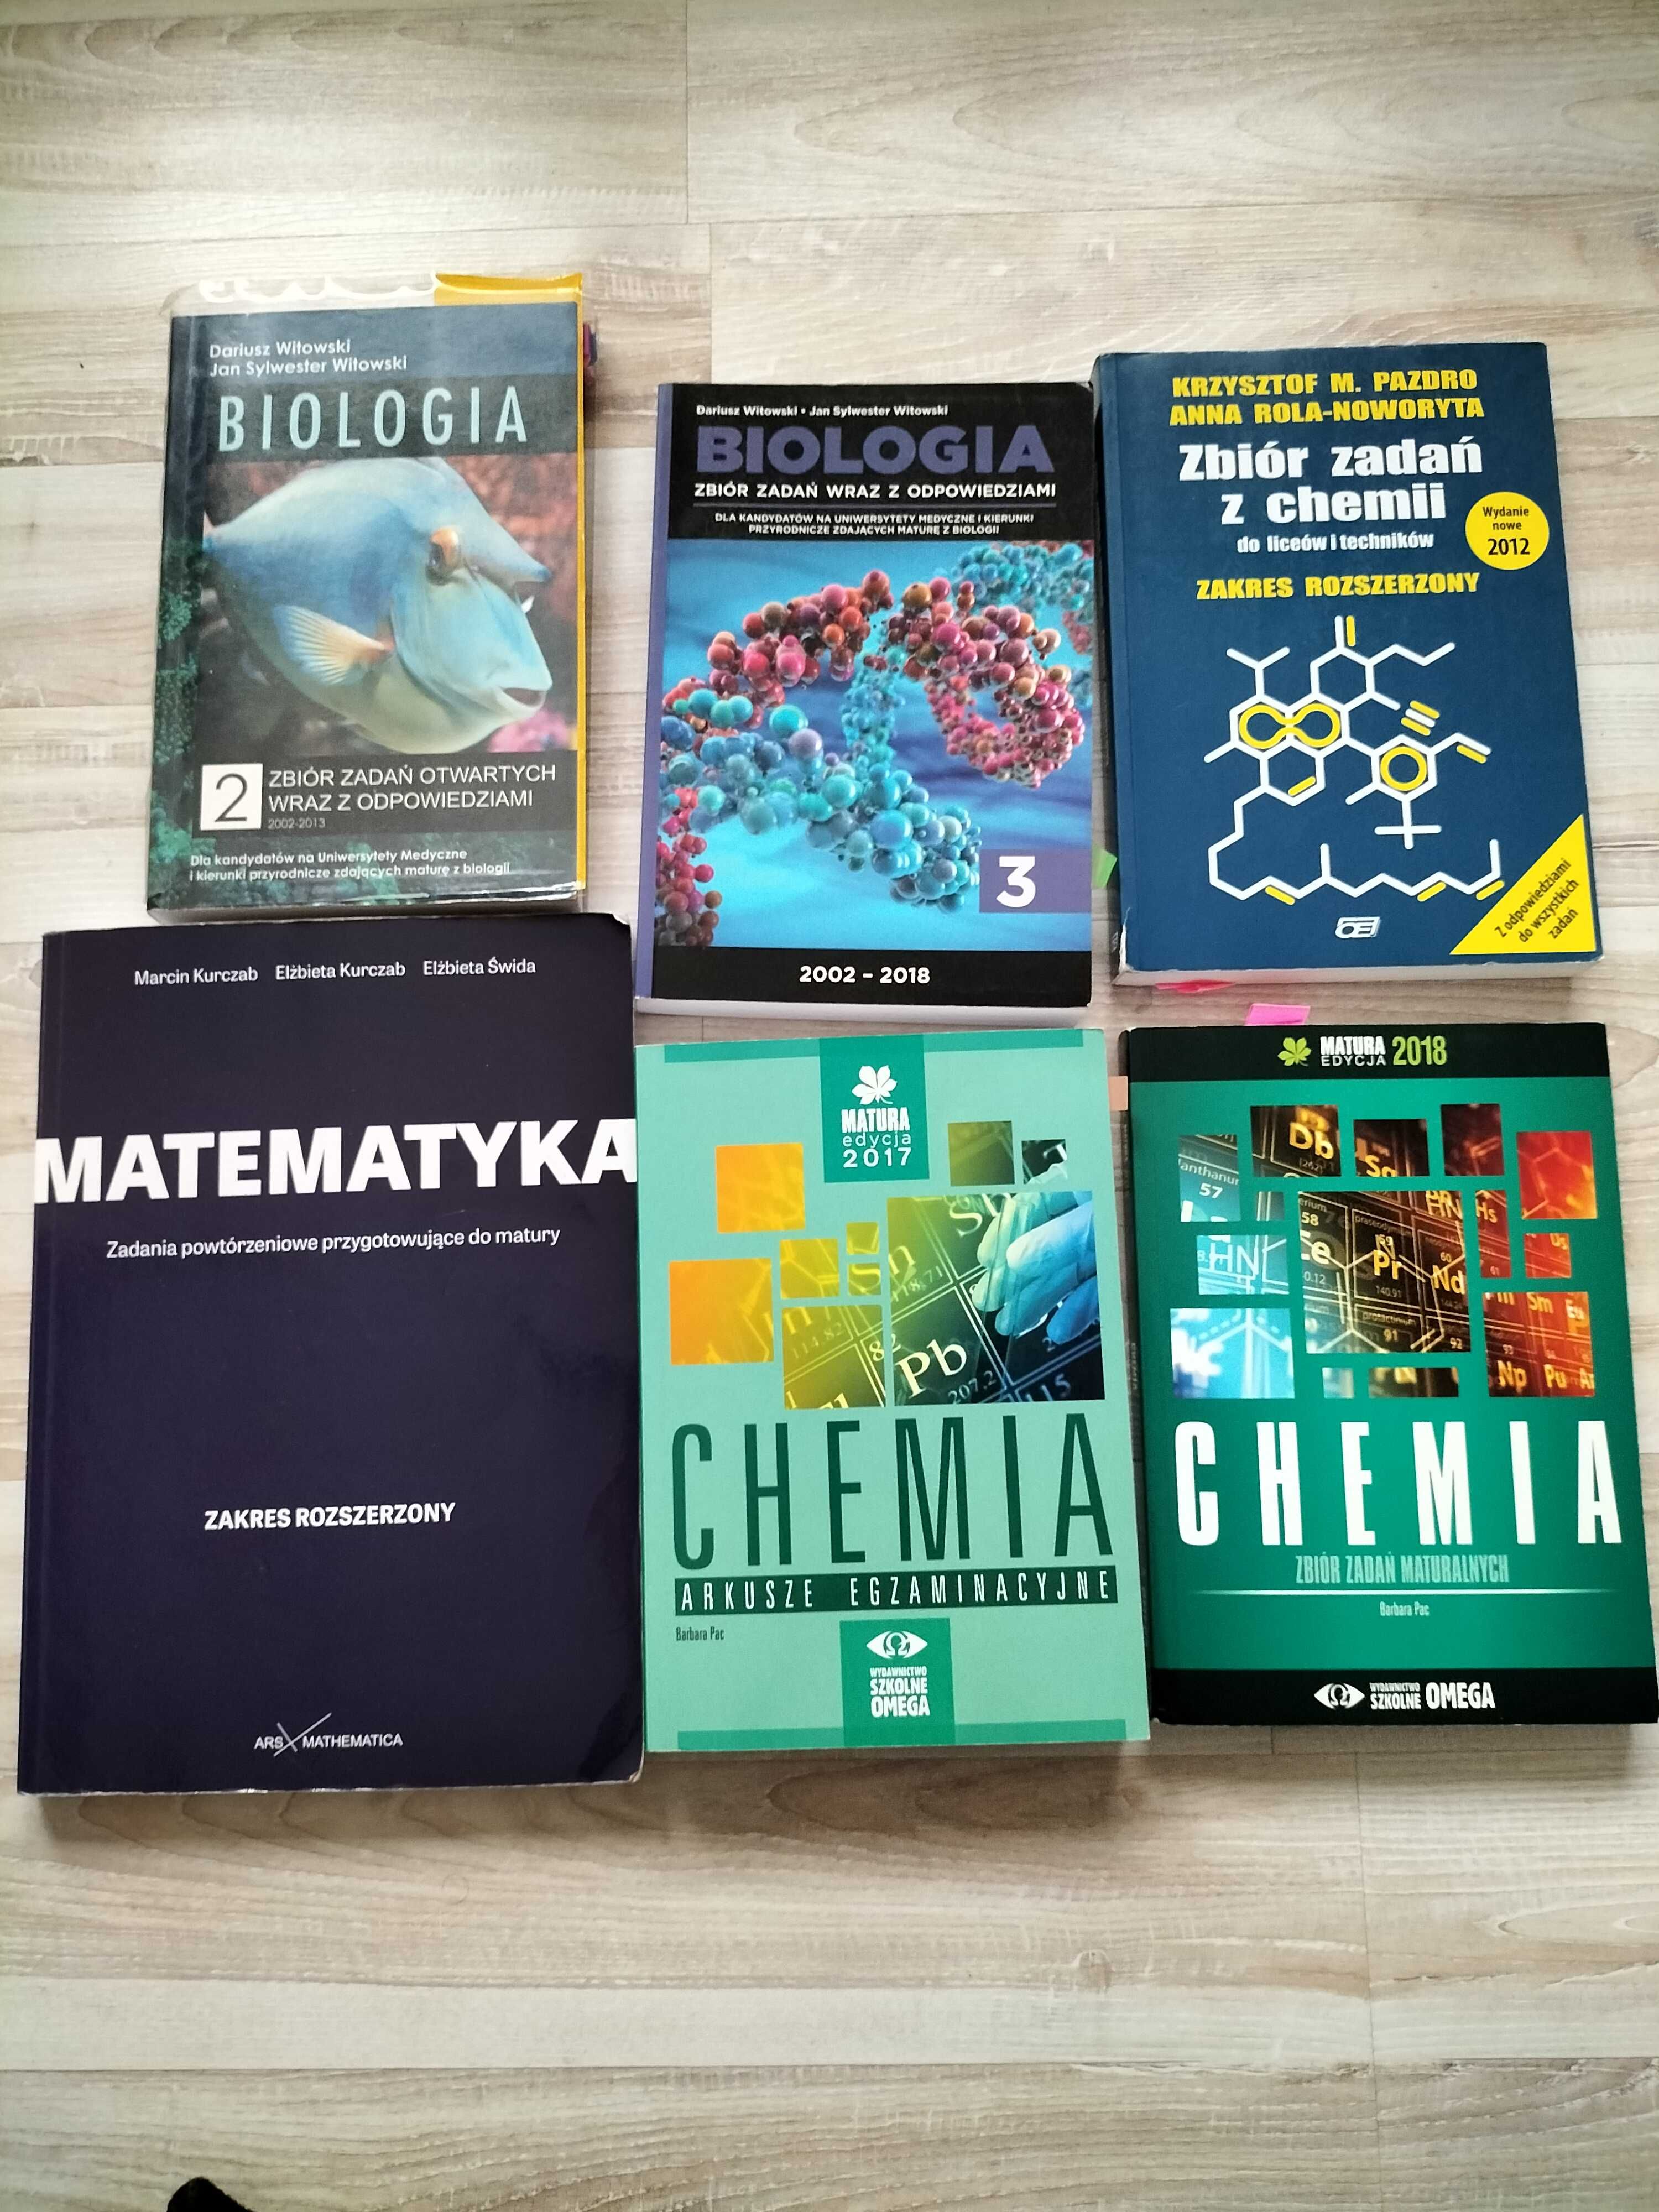 Książki rozszerzona chemia biologia matematyka matura witowski pac